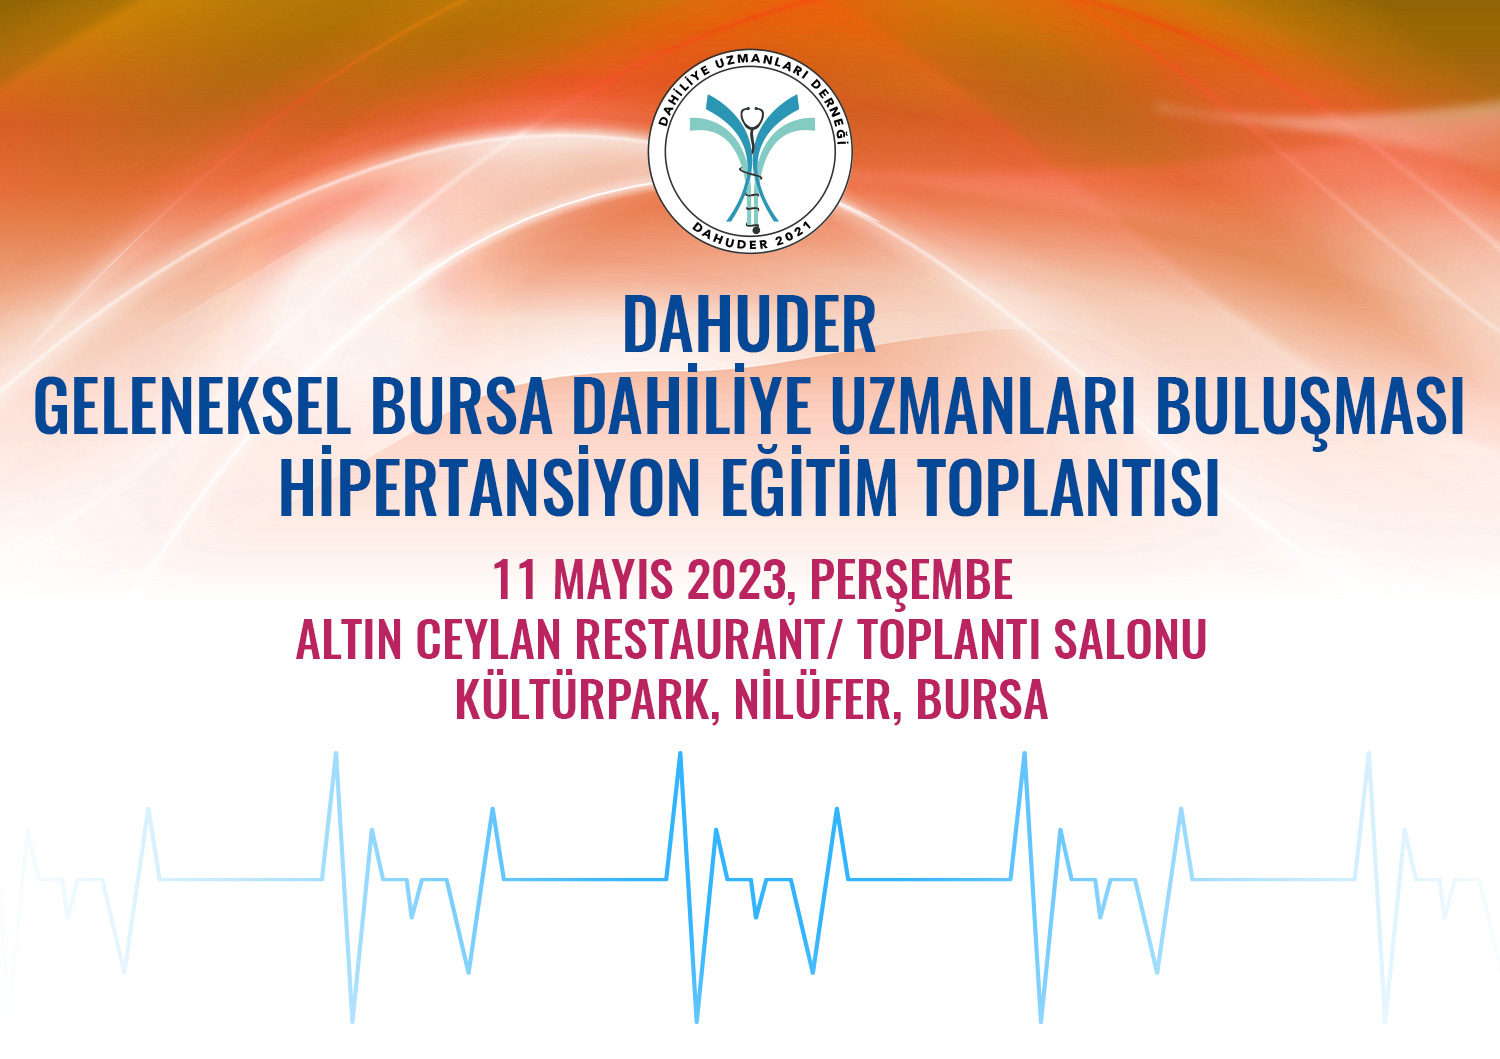 Hipertansiyon Eğitim Toplantısı / 11 Mayıs 2023 - Bursa